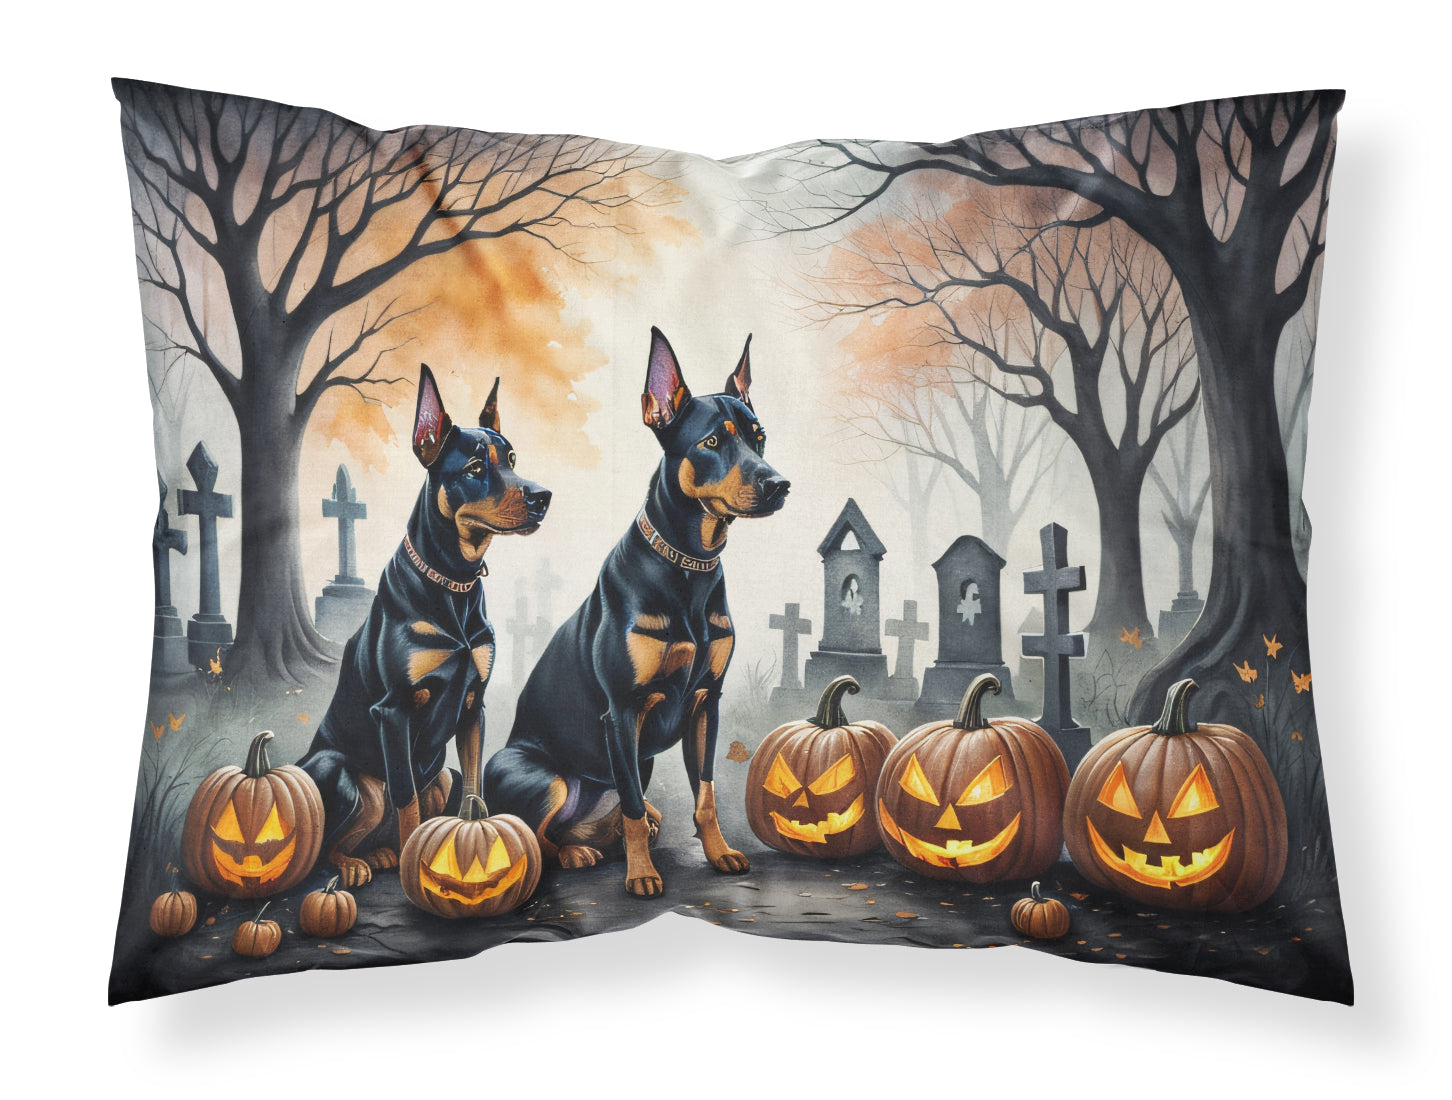 Buy this Doberman Pinscher Spooky Halloween Fabric Standard Pillowcase